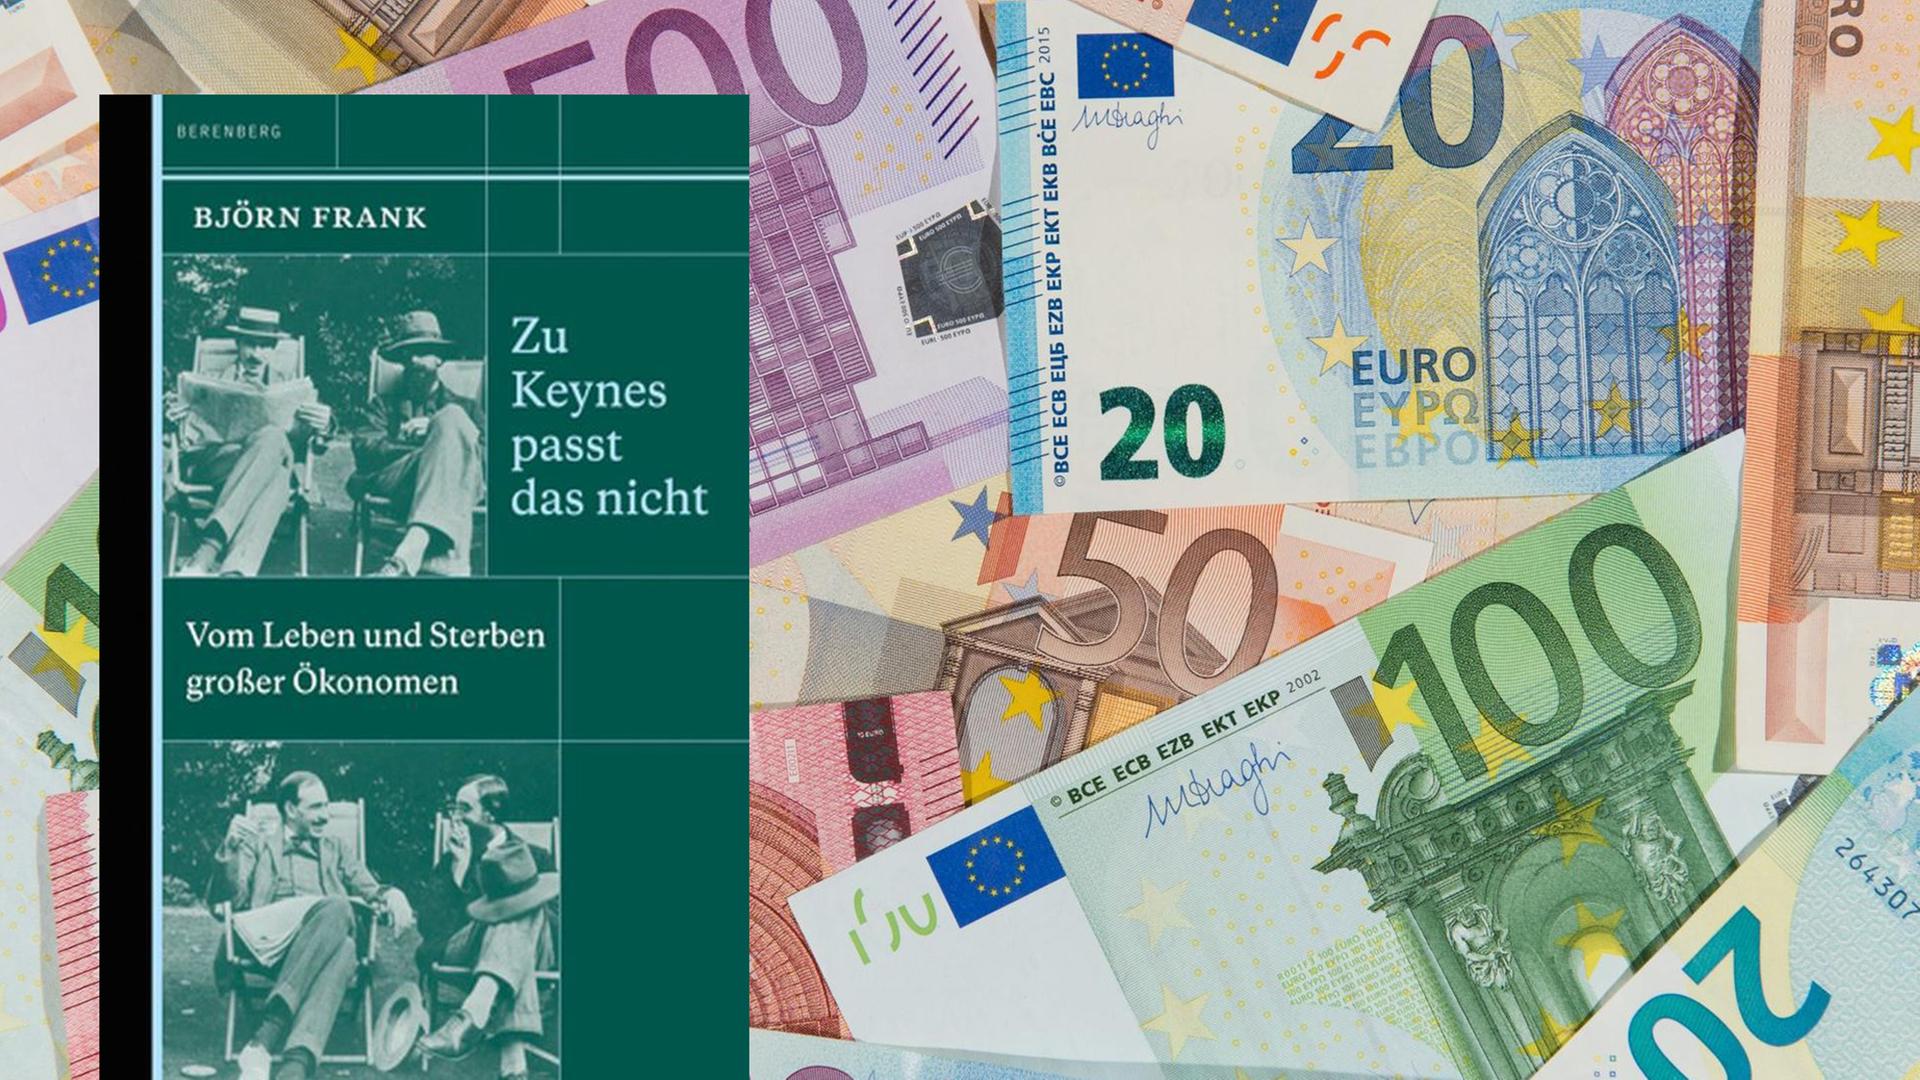 Cover von Björn Franks Buch "Zu Keynes passt das nicht" und Geldscheine